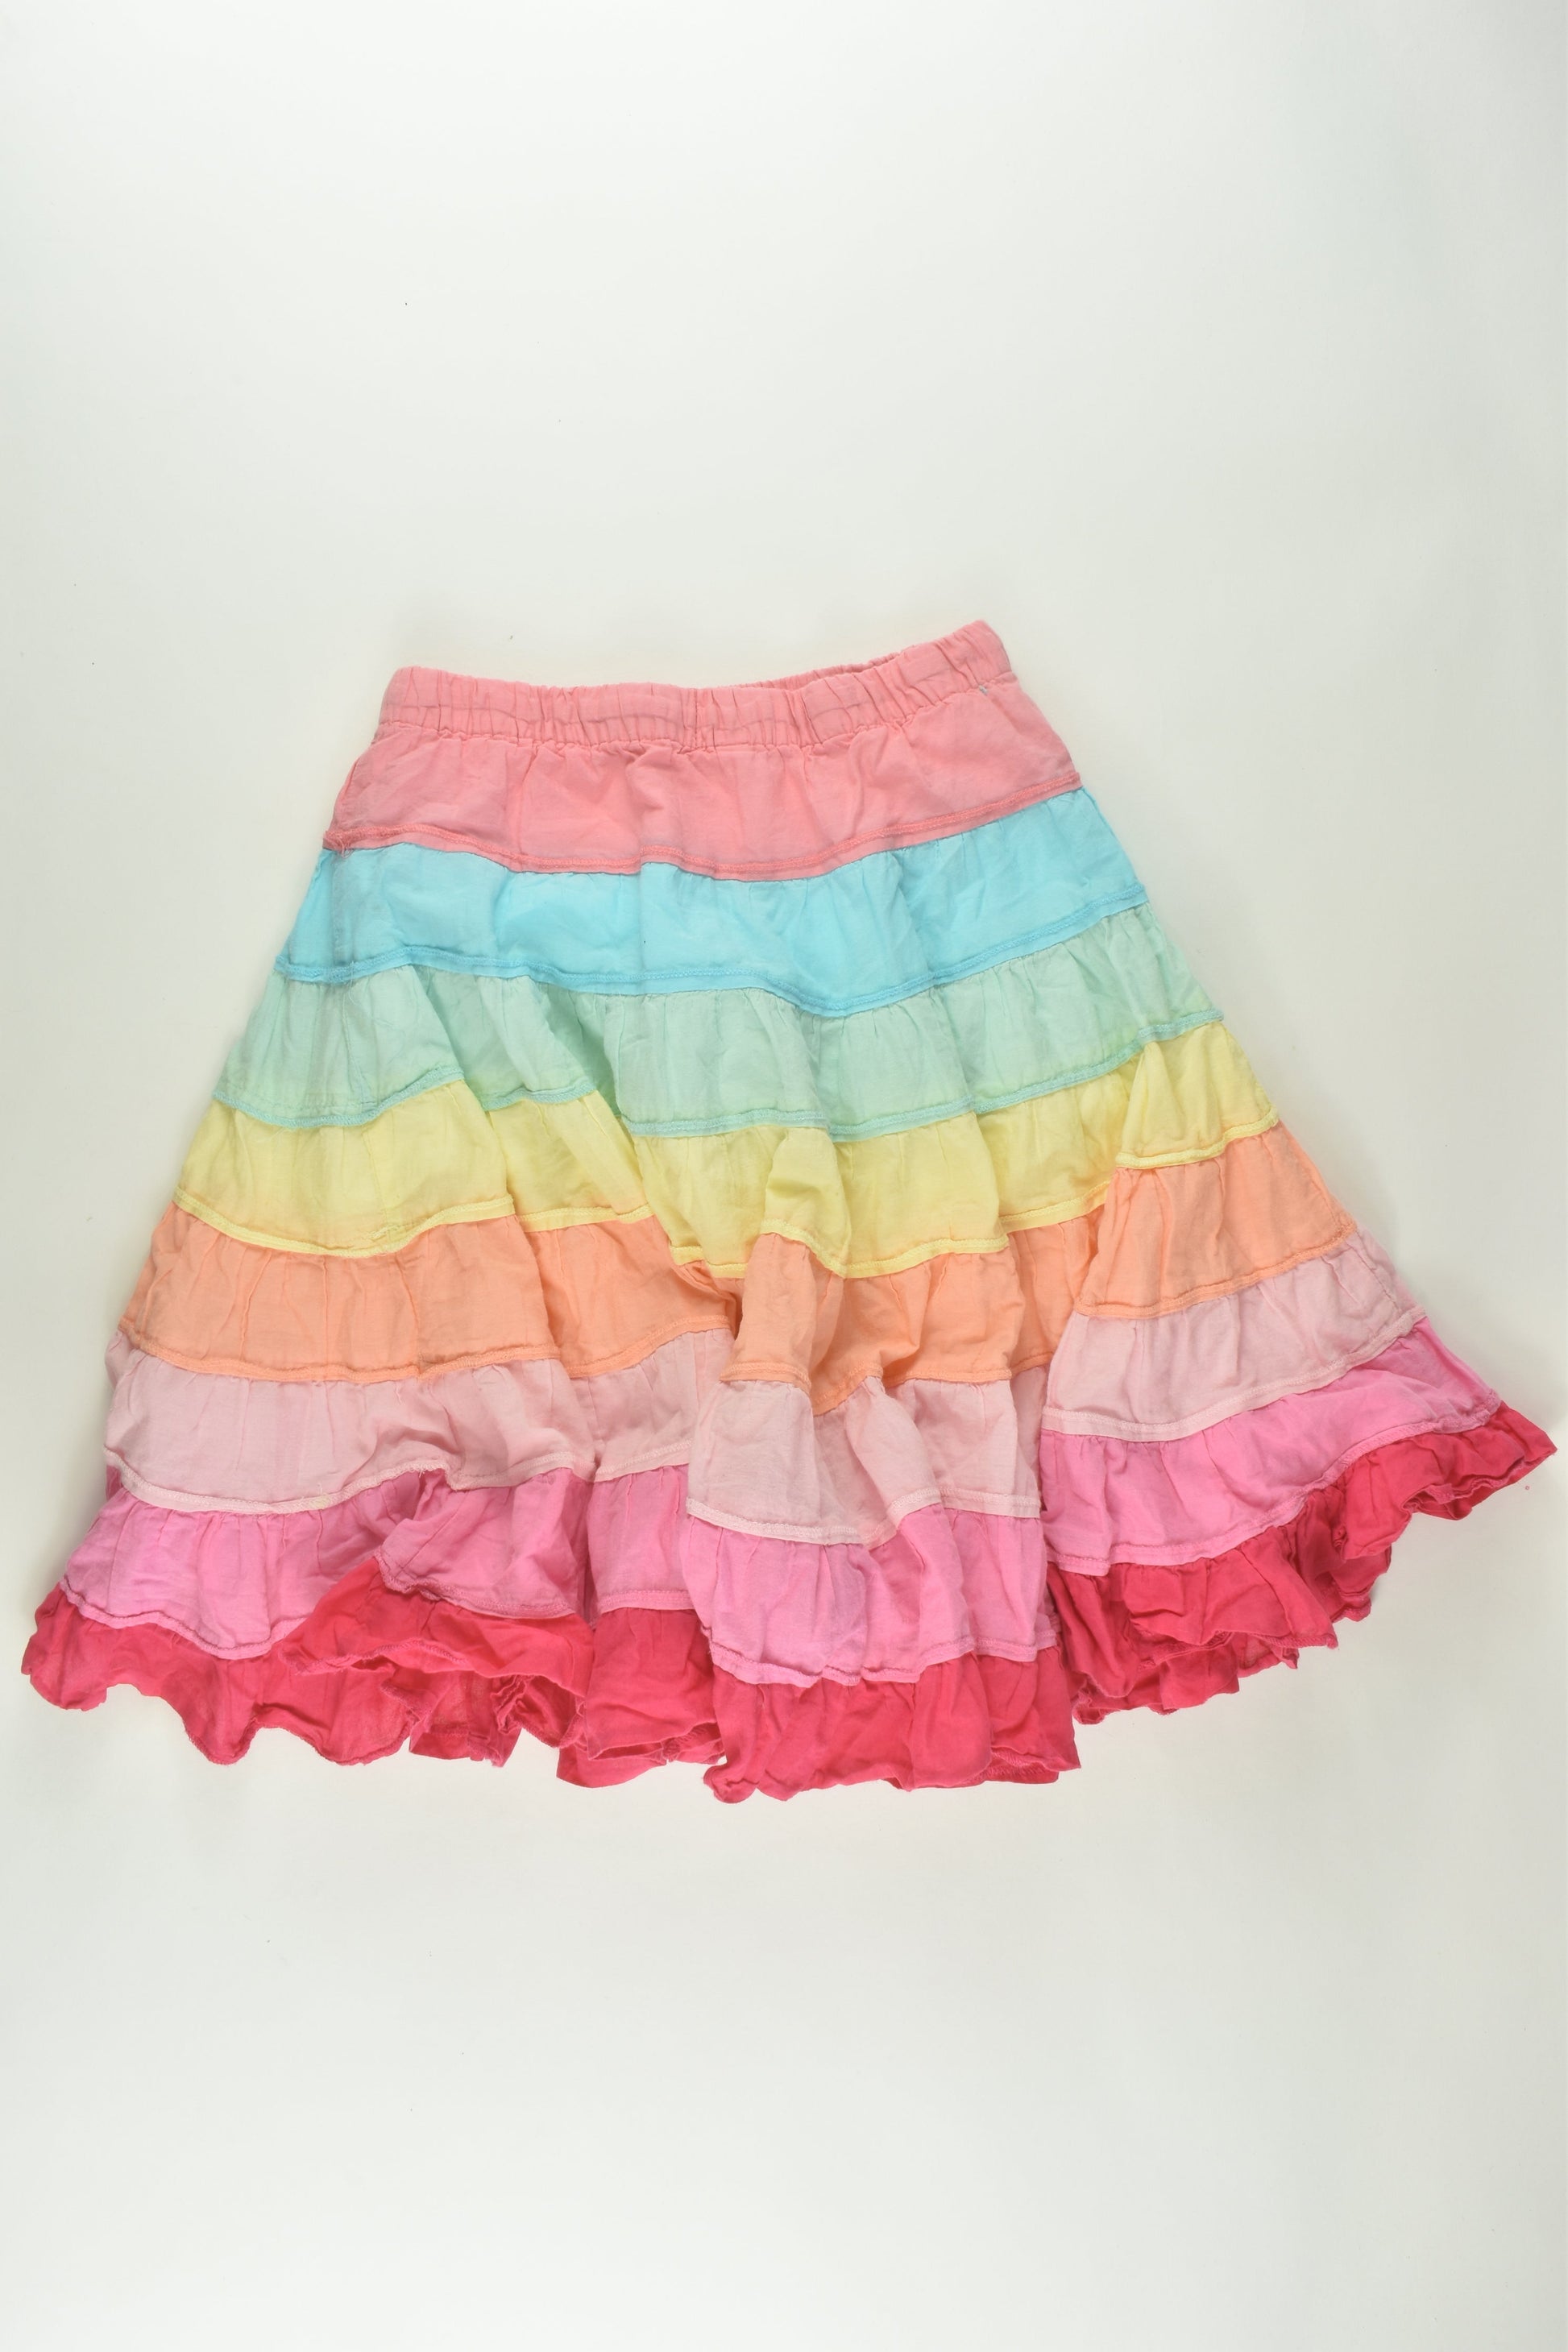 Milkshake Size 7 Lined Skirt